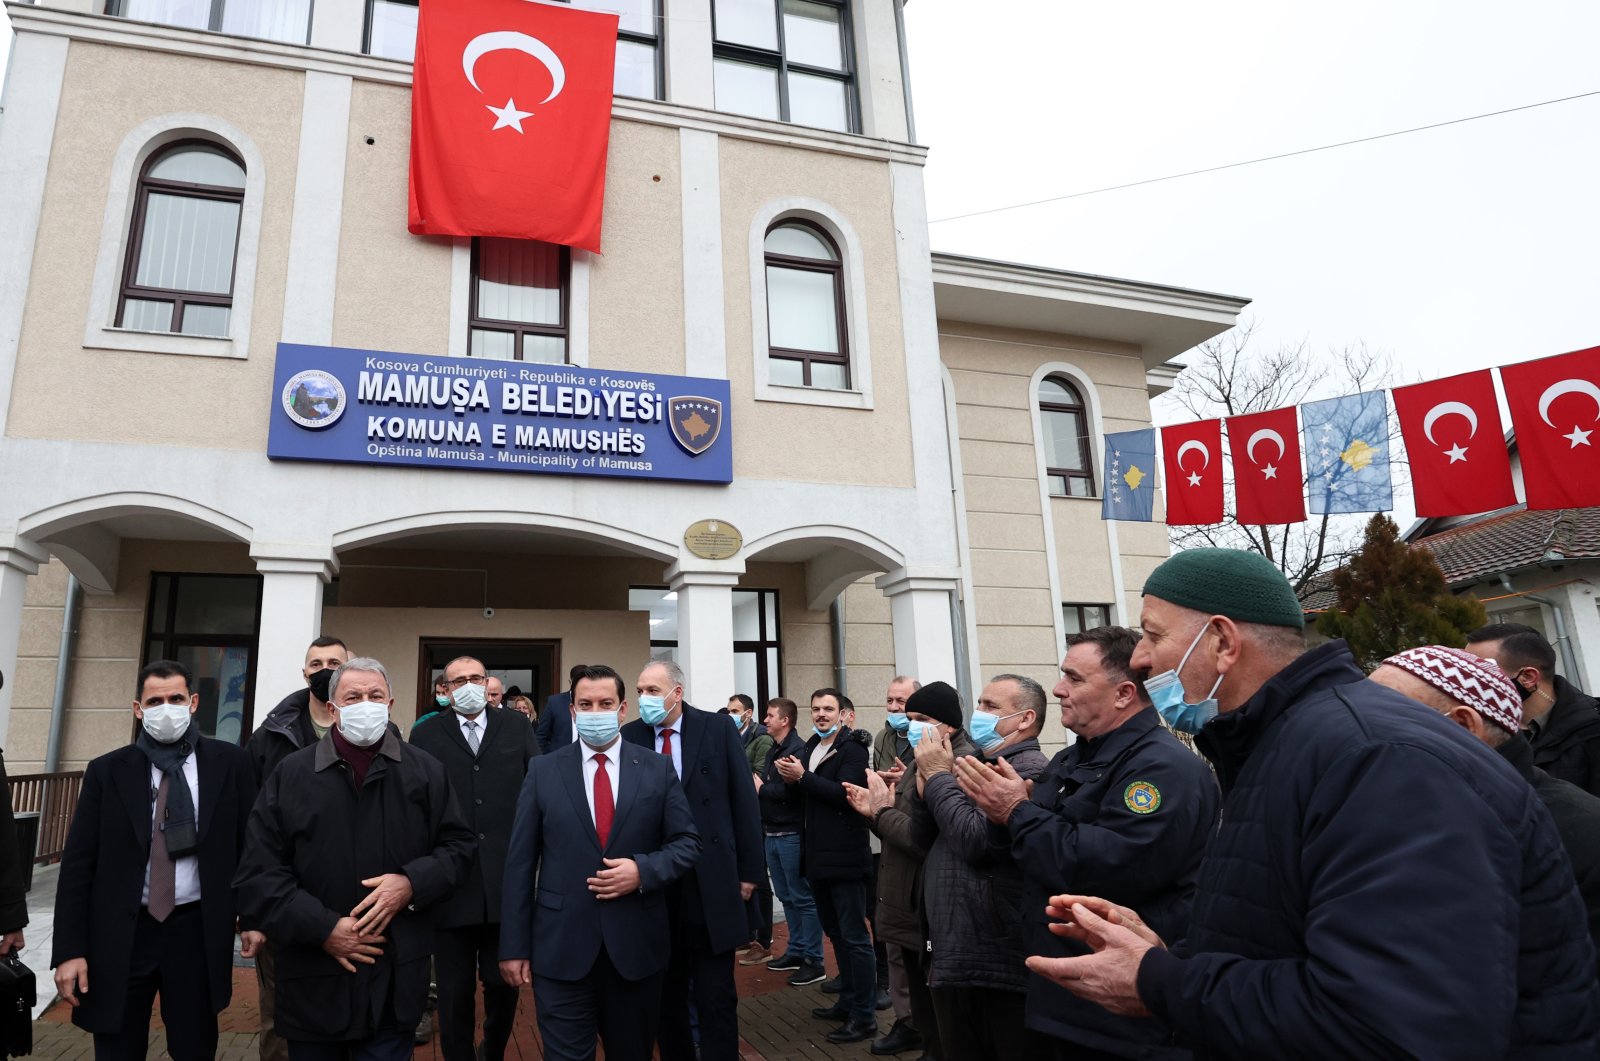 Turki mengikuti perkembangan di Balkan, kata Akar